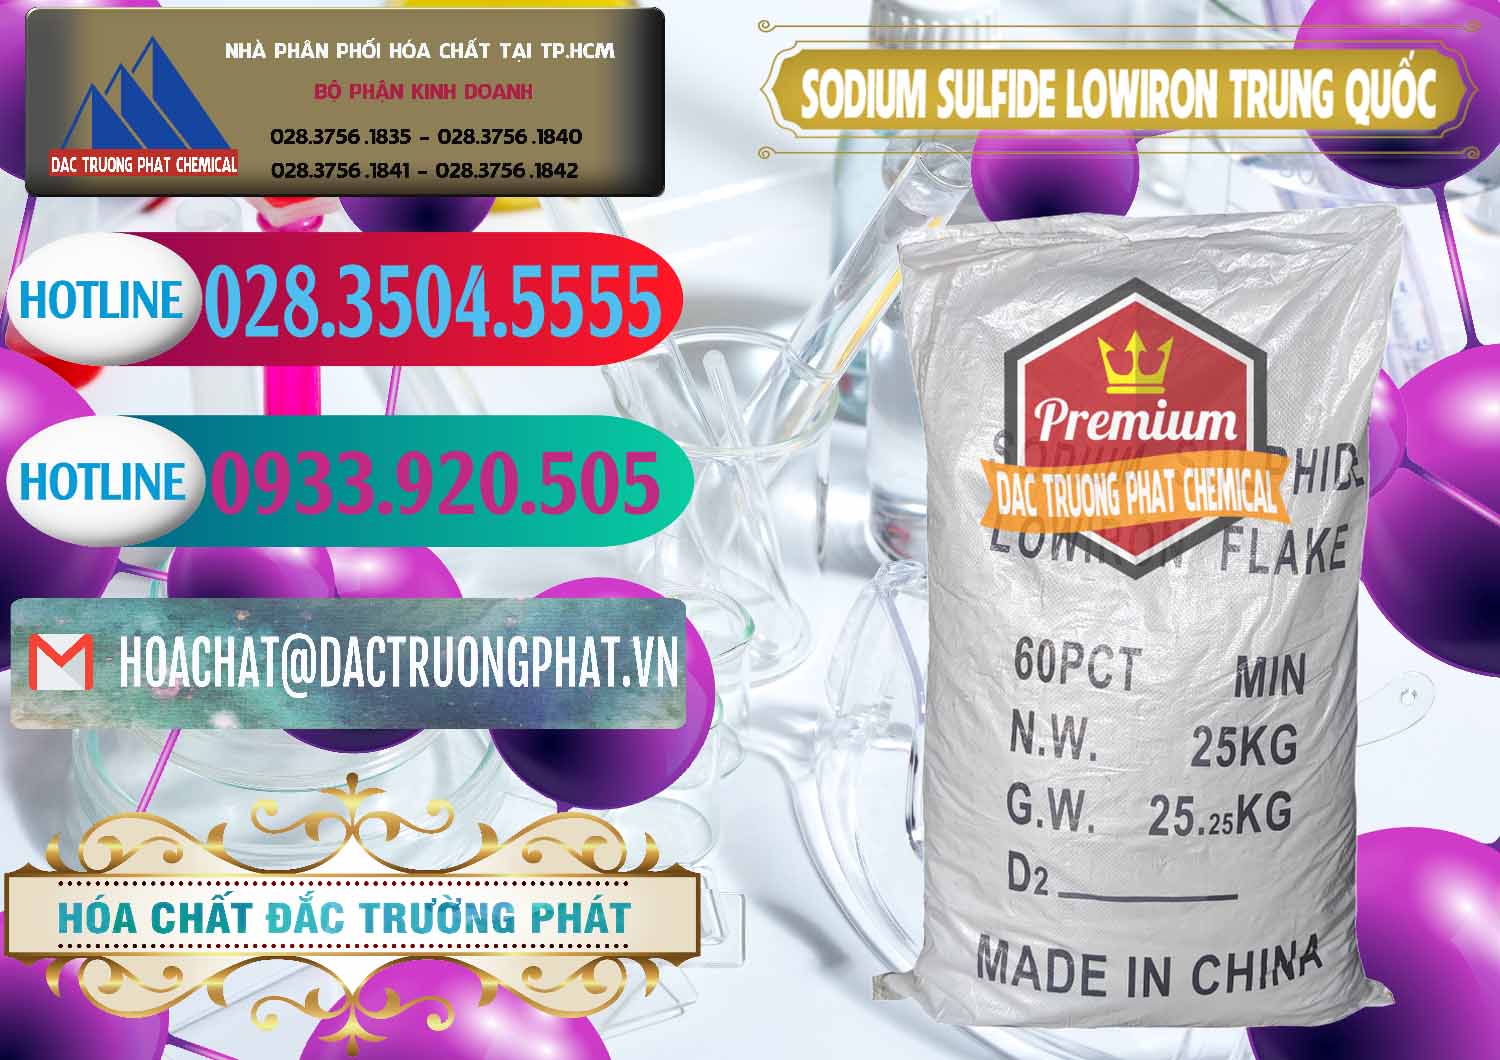 Nơi chuyên cung cấp và bán Sodium Sulfide NA2S – Đá Thối Lowiron Trung Quốc China - 0227 - Nhập khẩu và phân phối hóa chất tại TP.HCM - truongphat.vn